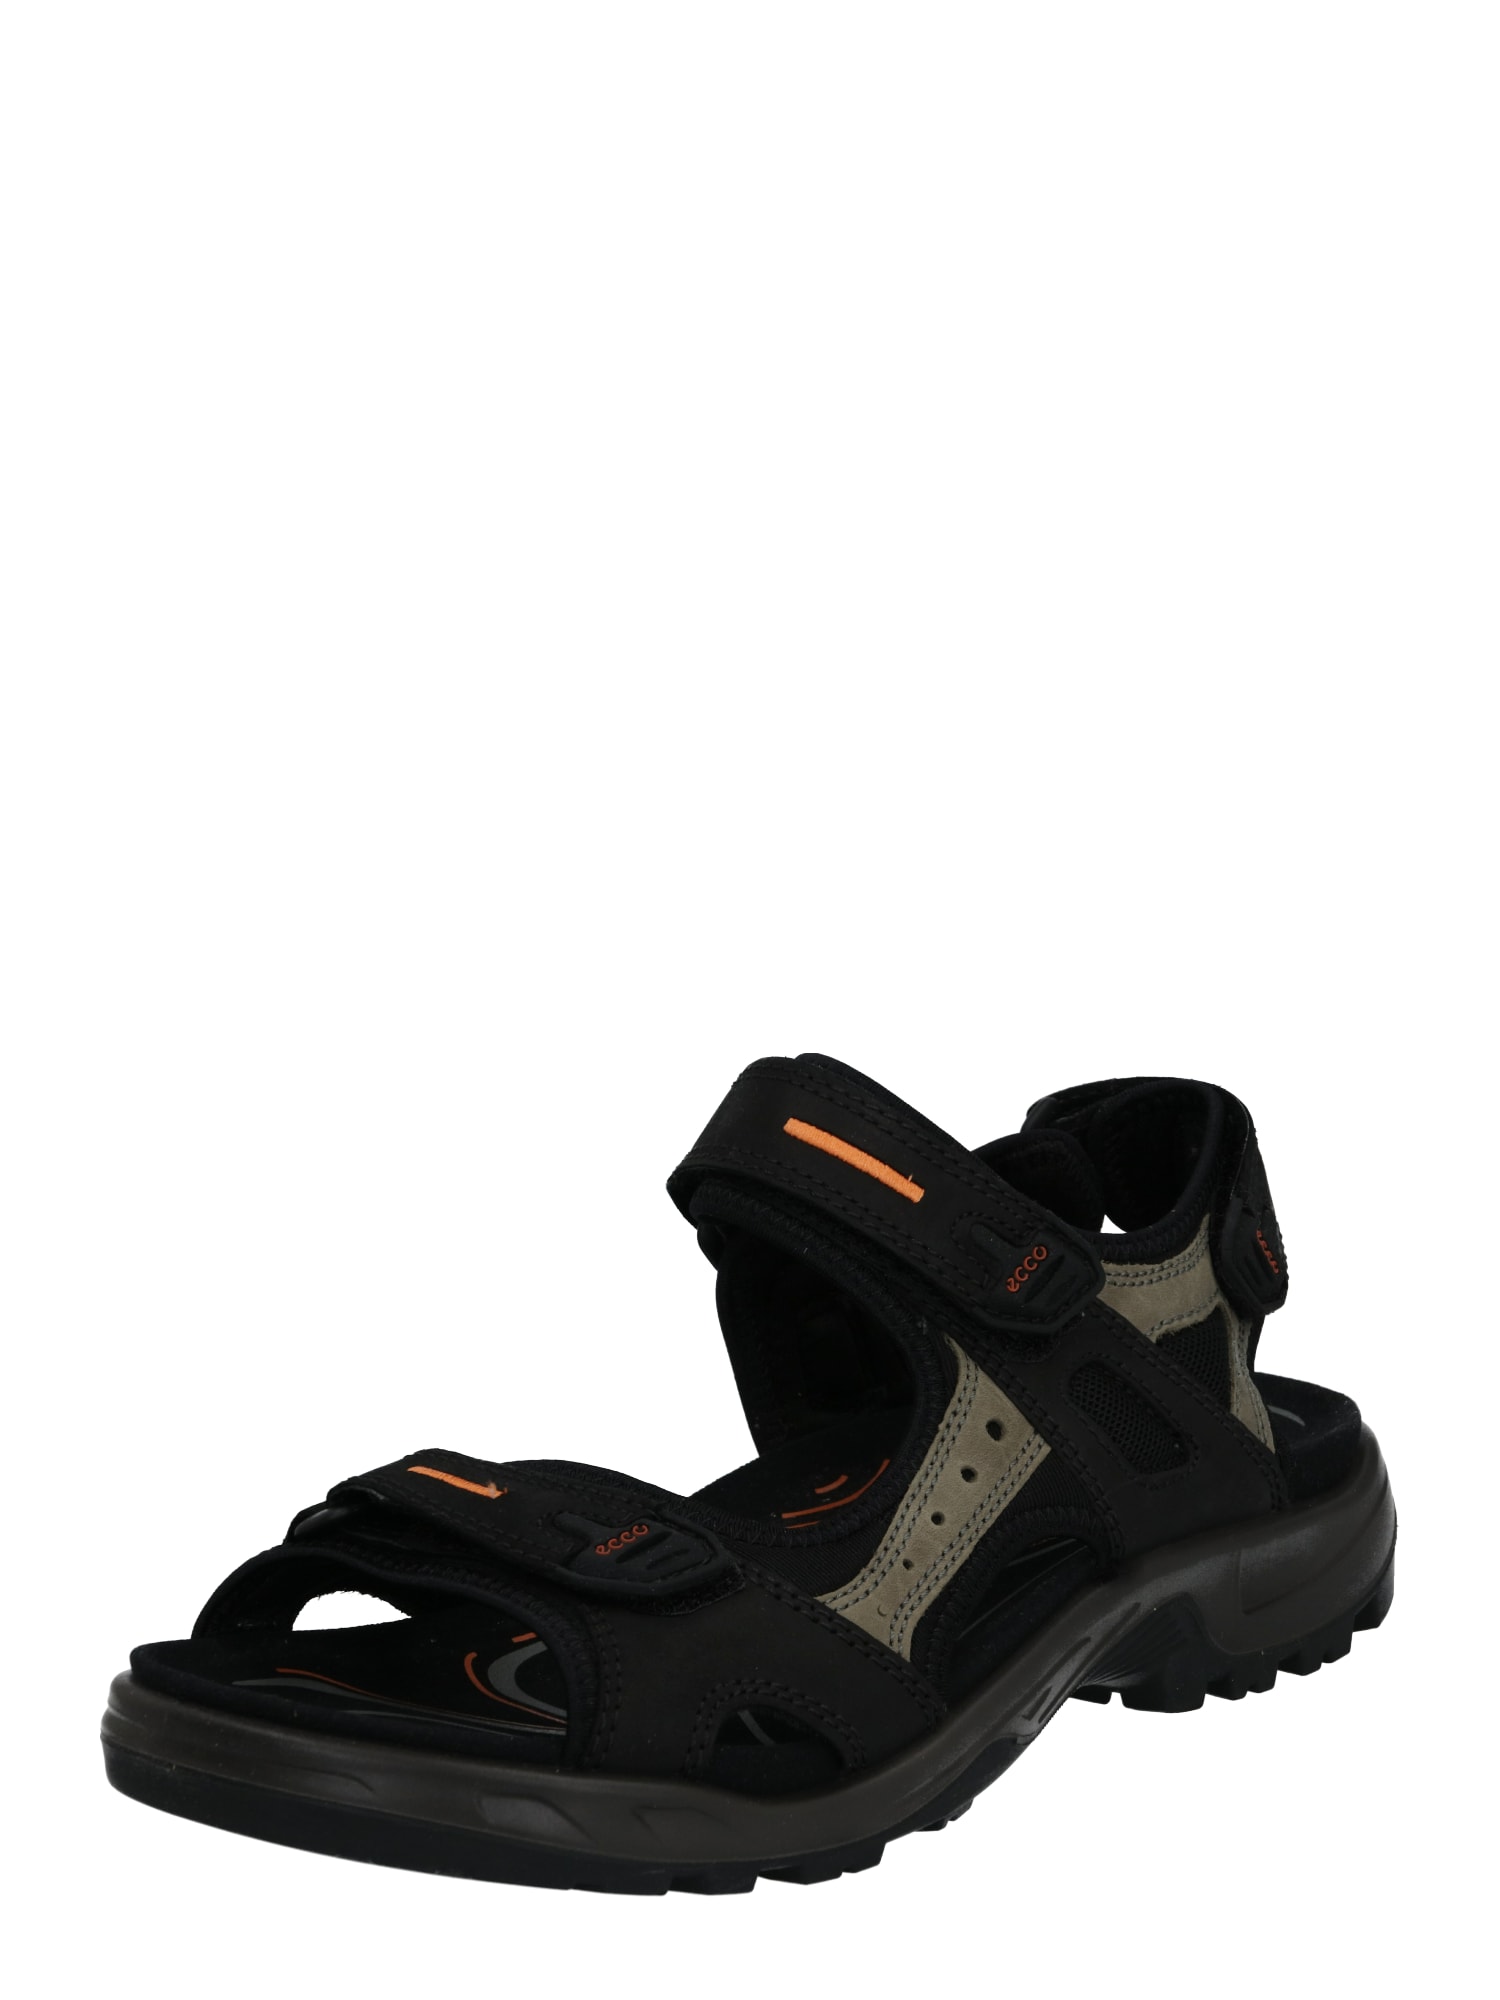 ECCO Sportinio tipo sandalai 'Offroad'  šviesiai oranžinė / juoda / nebalintos drobės spalva